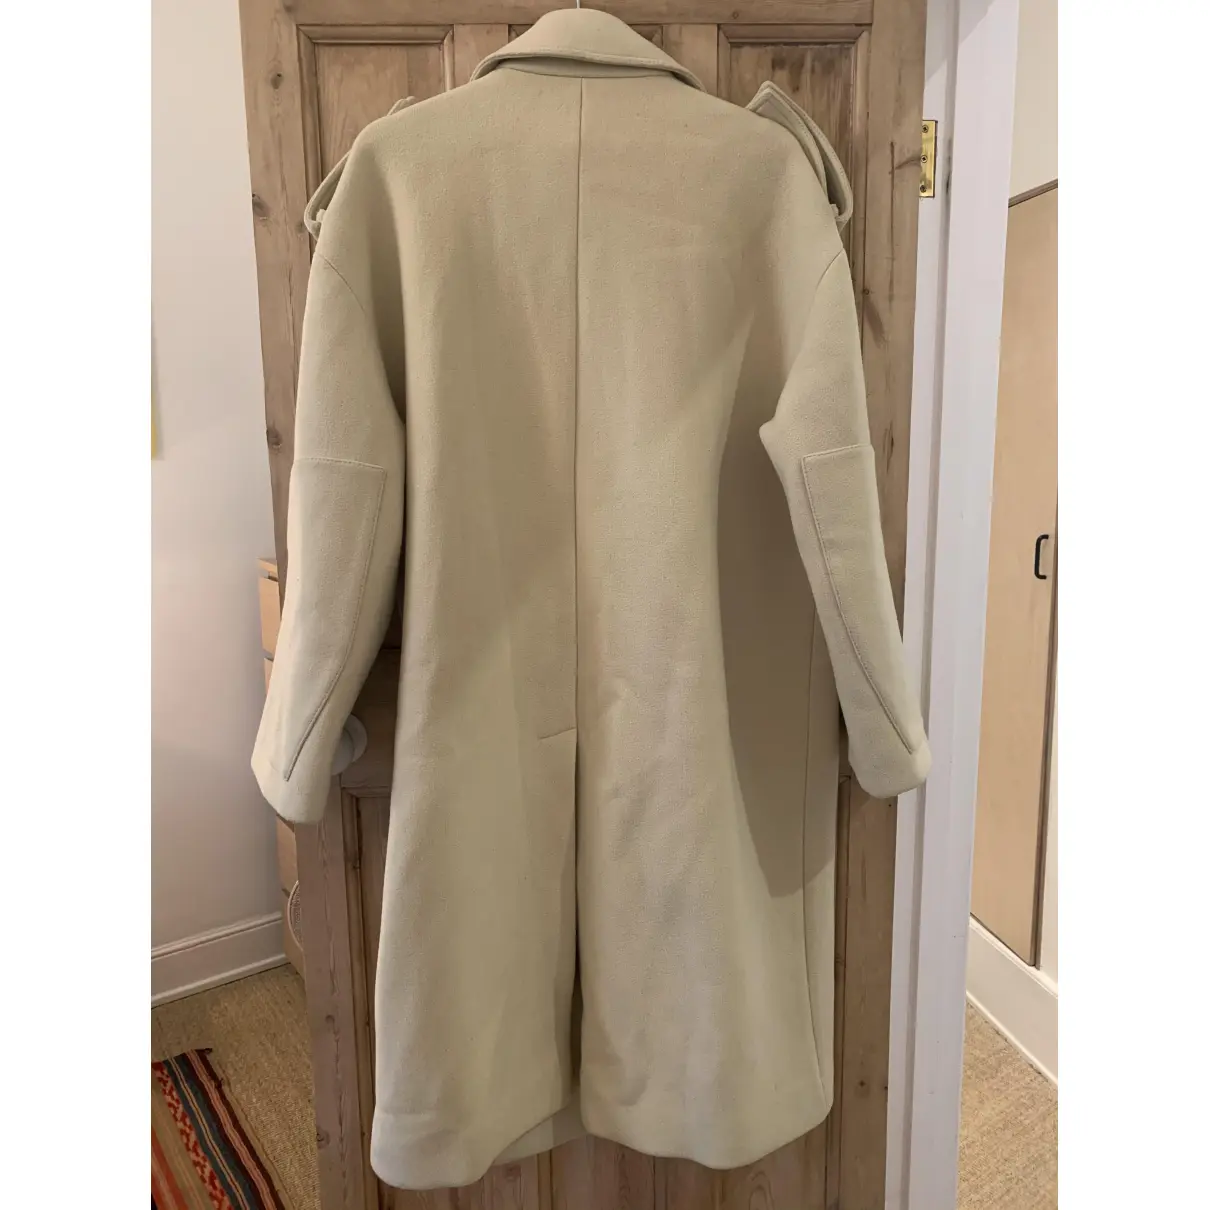 Buy Stella McCartney Wool coat online